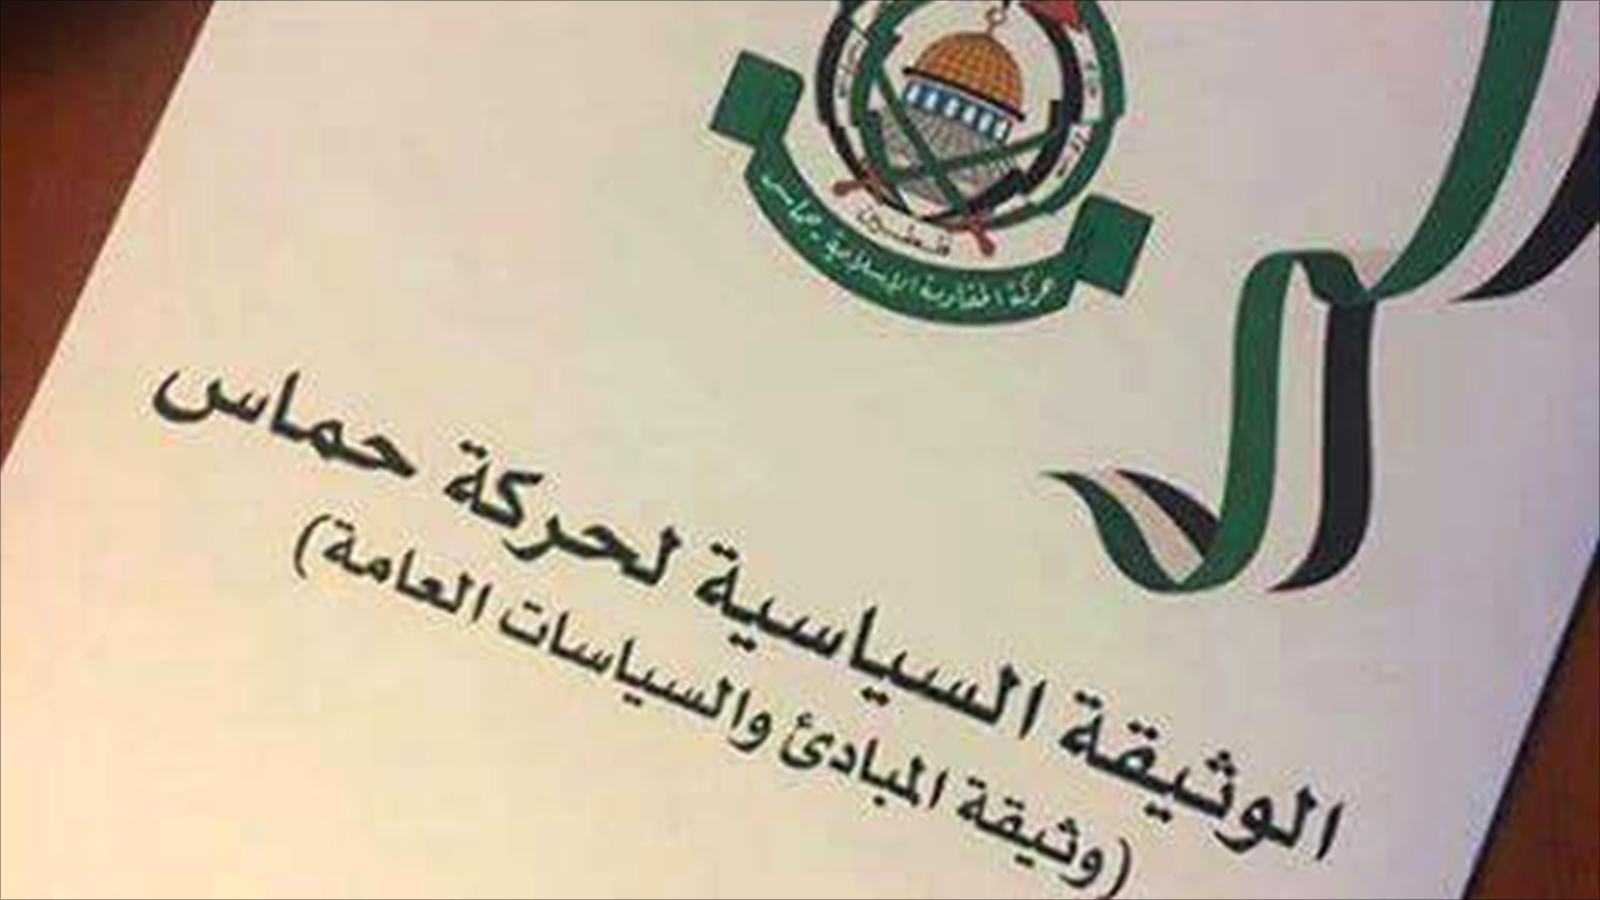 ‪الوثيقة الجديدة لحركة حماس تتكون من 42 بندا وتعرف بالحركة وتعرض رؤيتها للصراع مع الاحتلال‬ (الجزيرة)